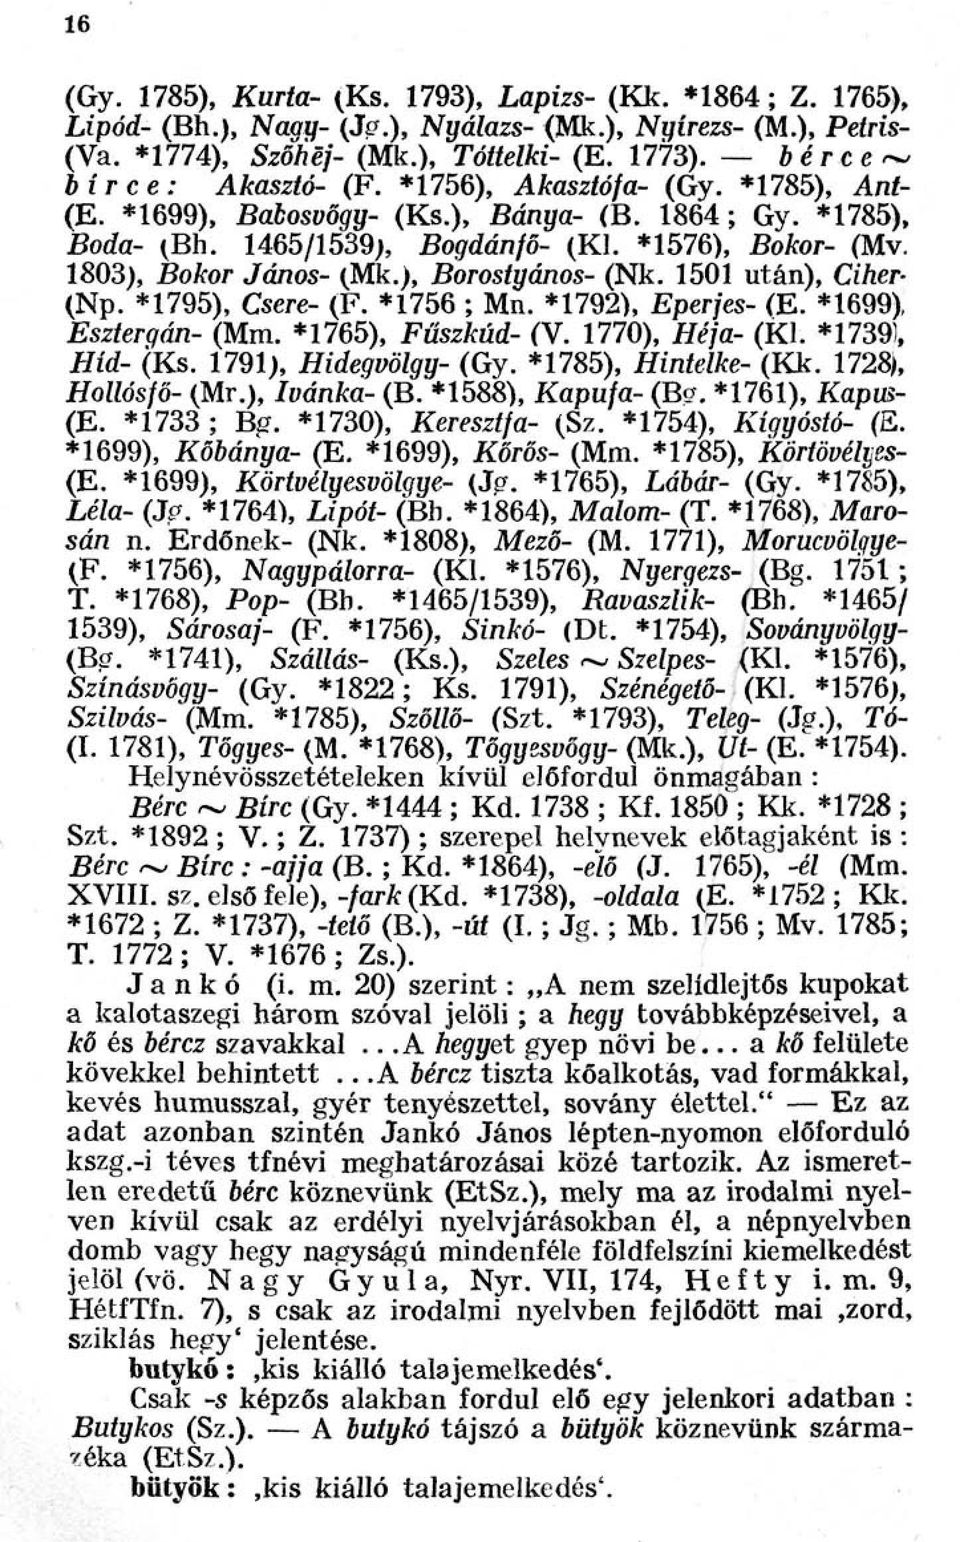 1803), Bokor János- (Mk.), Borostyános- (Nk. 1501 után), Ciher- (Np. *1795), Csere- (F. *1756 ; Mn. *1792), Eperjes- (E. *1699), Esztergán- (Mm. *1765), Fűszkúd- (V. 1770), Héja- (Kl.